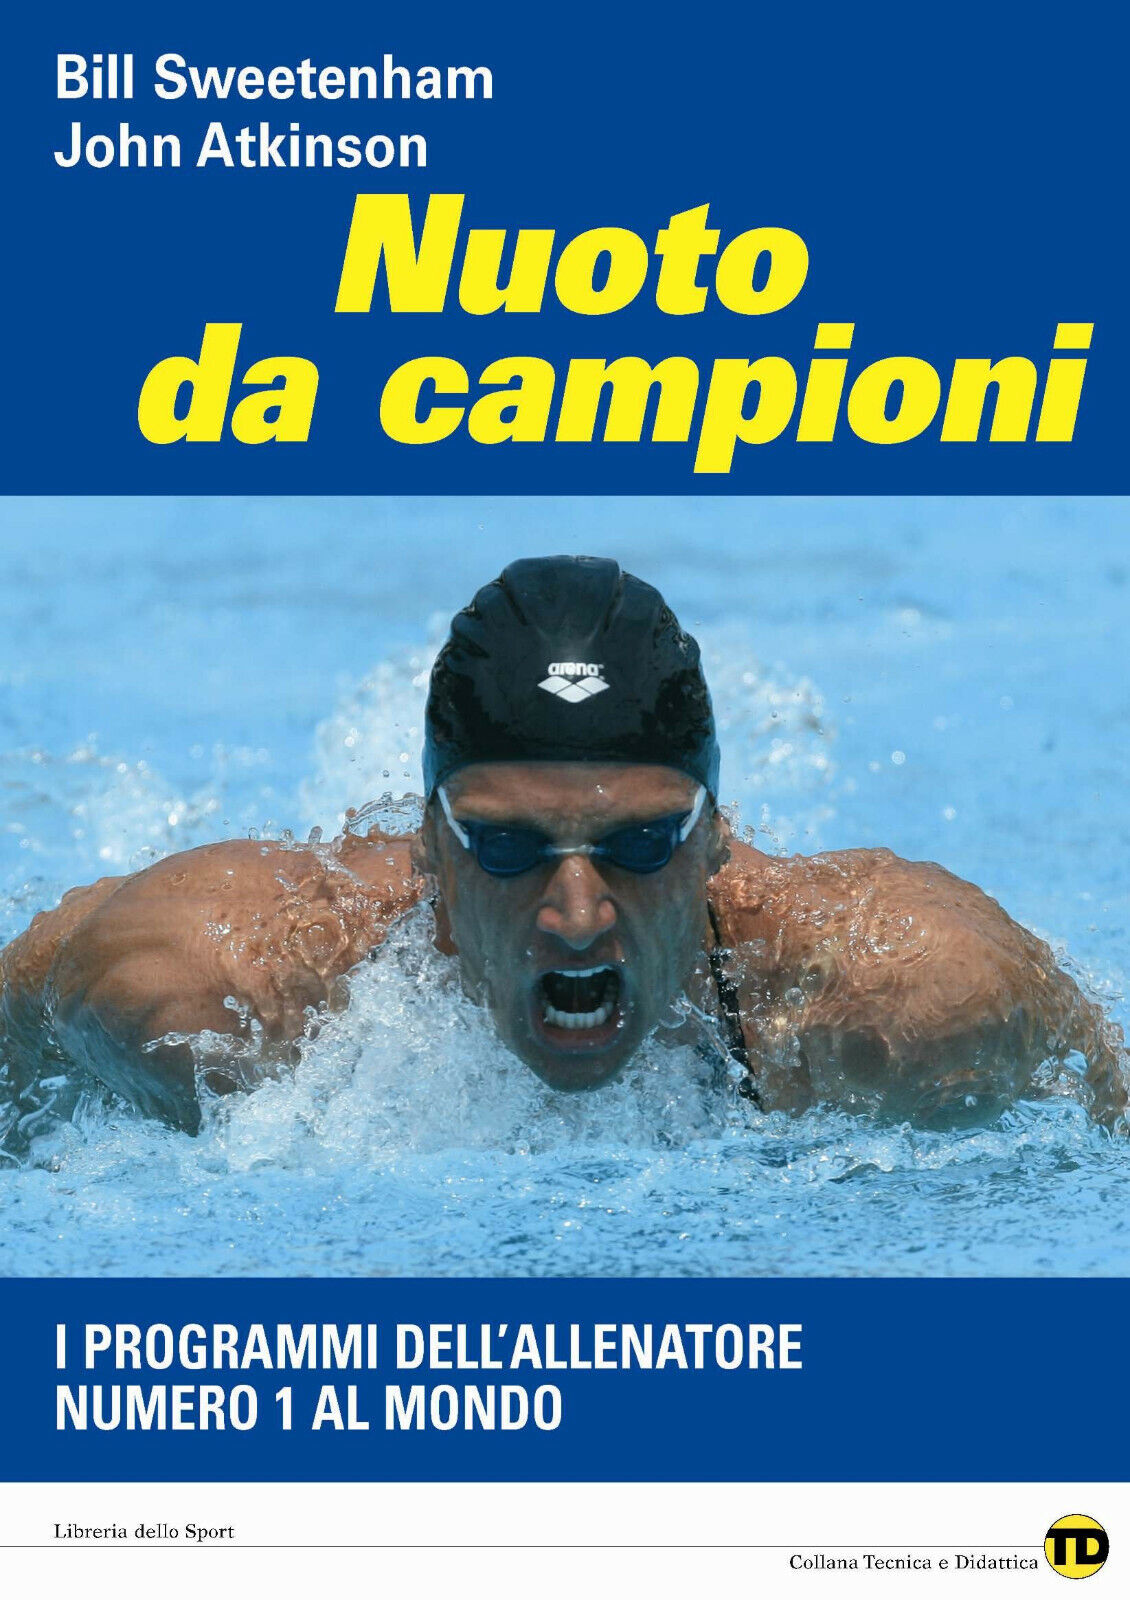 Nuoto da campioni - Bill Sweetenham, John Atkinson - Libreria dello Sport,2008